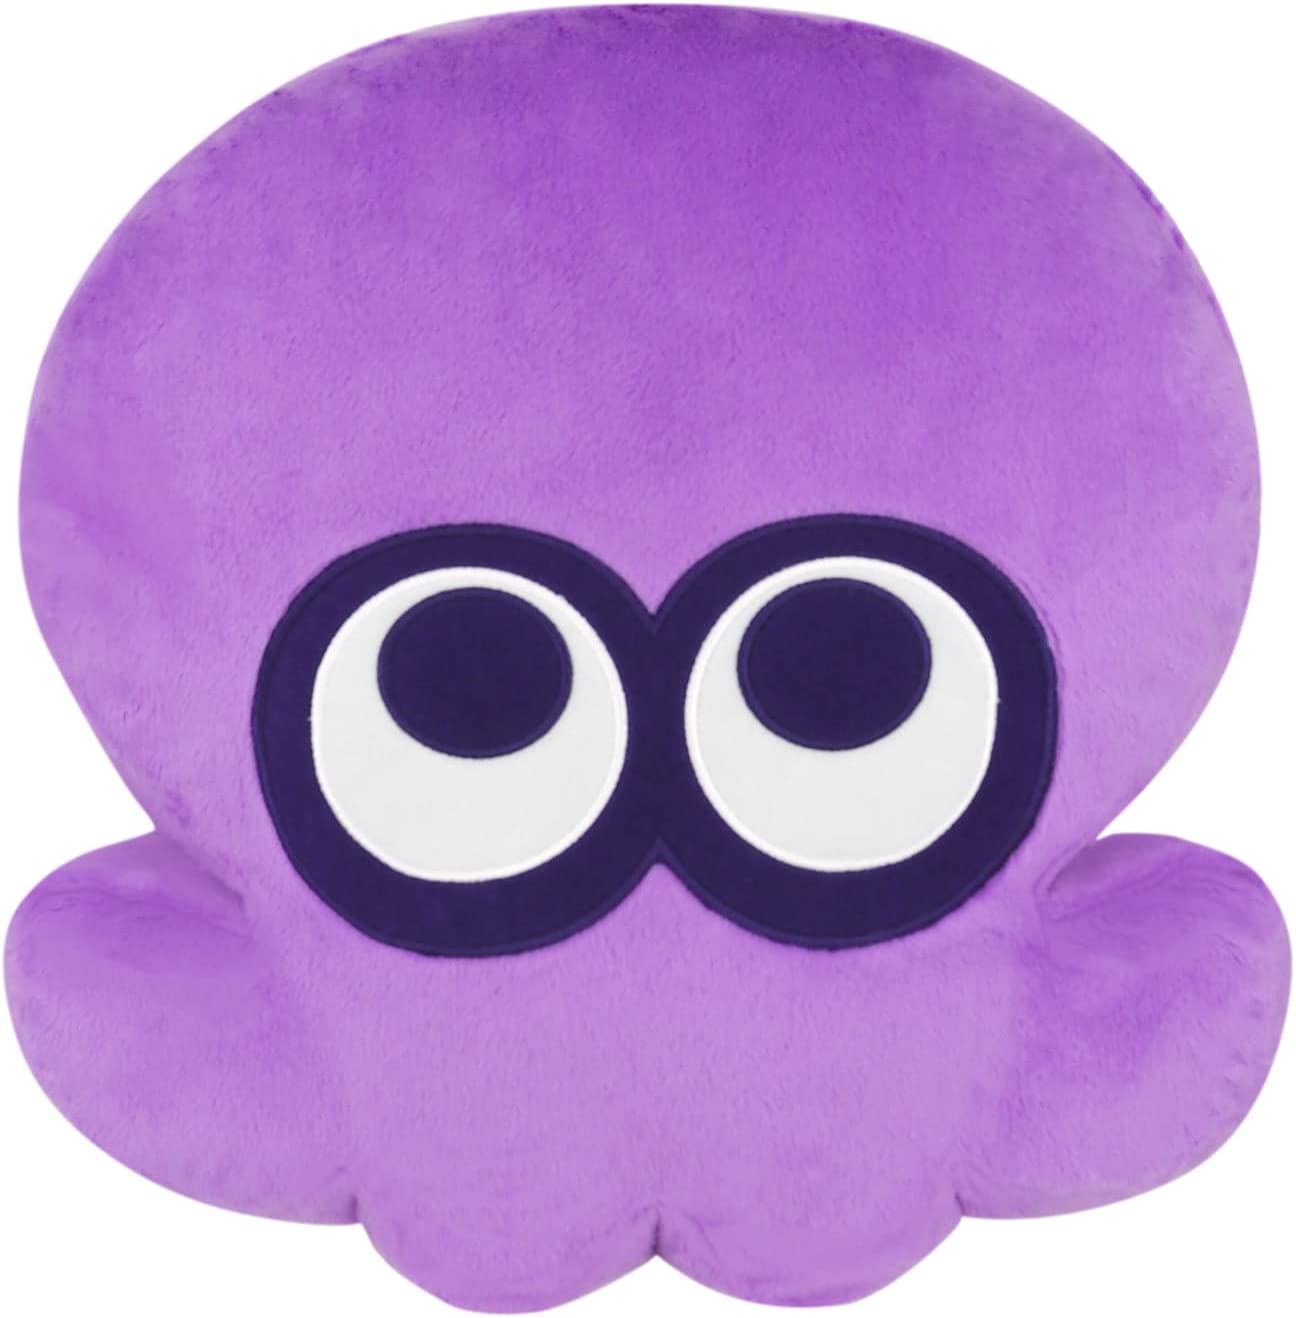 Splatoon 3 All Star Collection Cushion: Octopus Purple (Re-run) San-ei Boeki